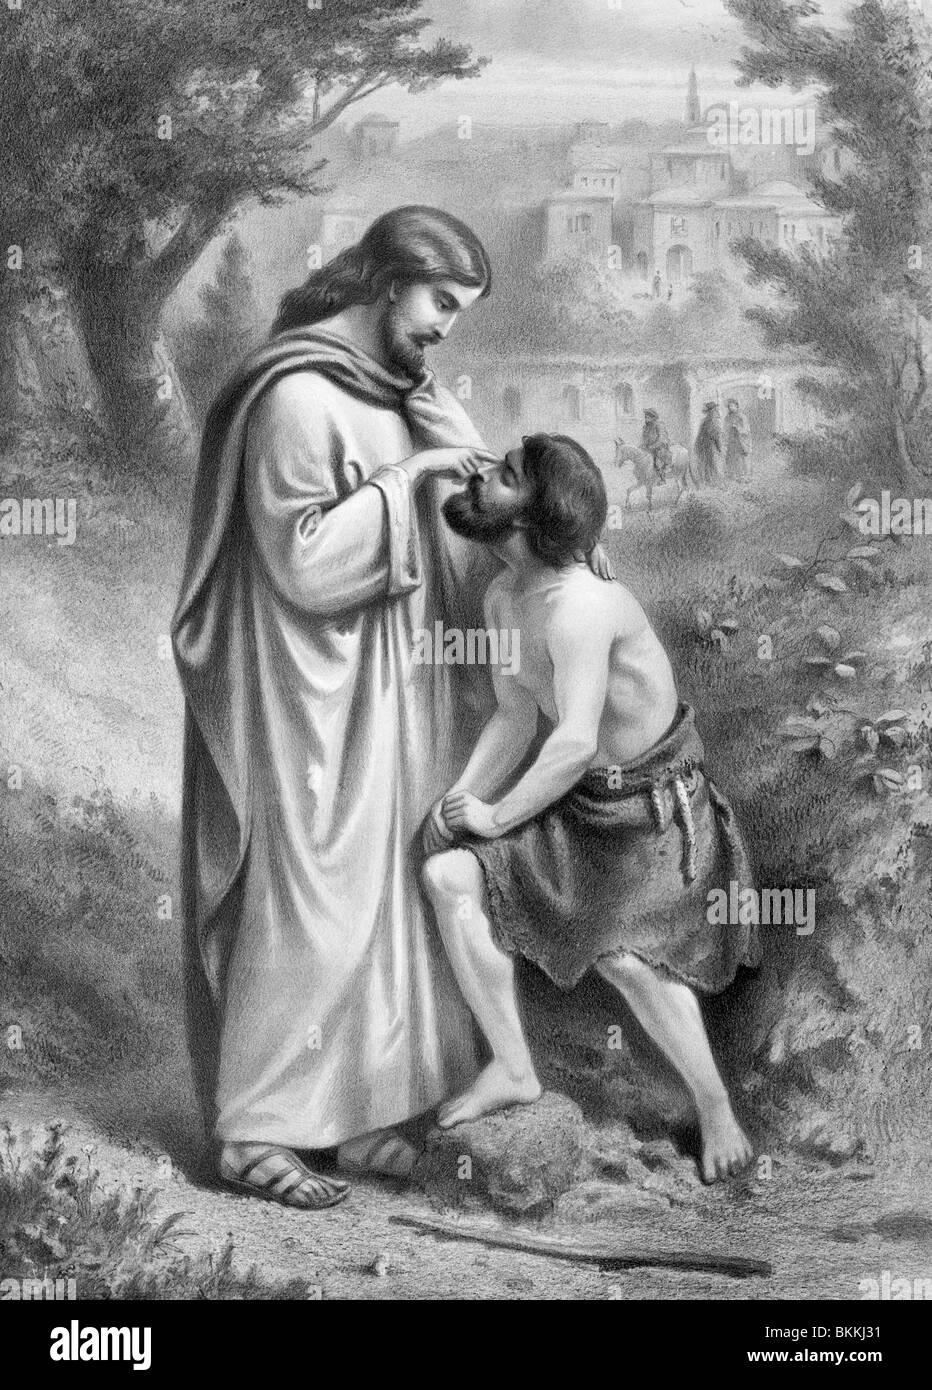 Vintage print c1873 (représentant le Christ de recouvrer la vue à un aveugle - un miracle décrit dans l'Évangile de Jean (chapitre 9). Banque D'Images